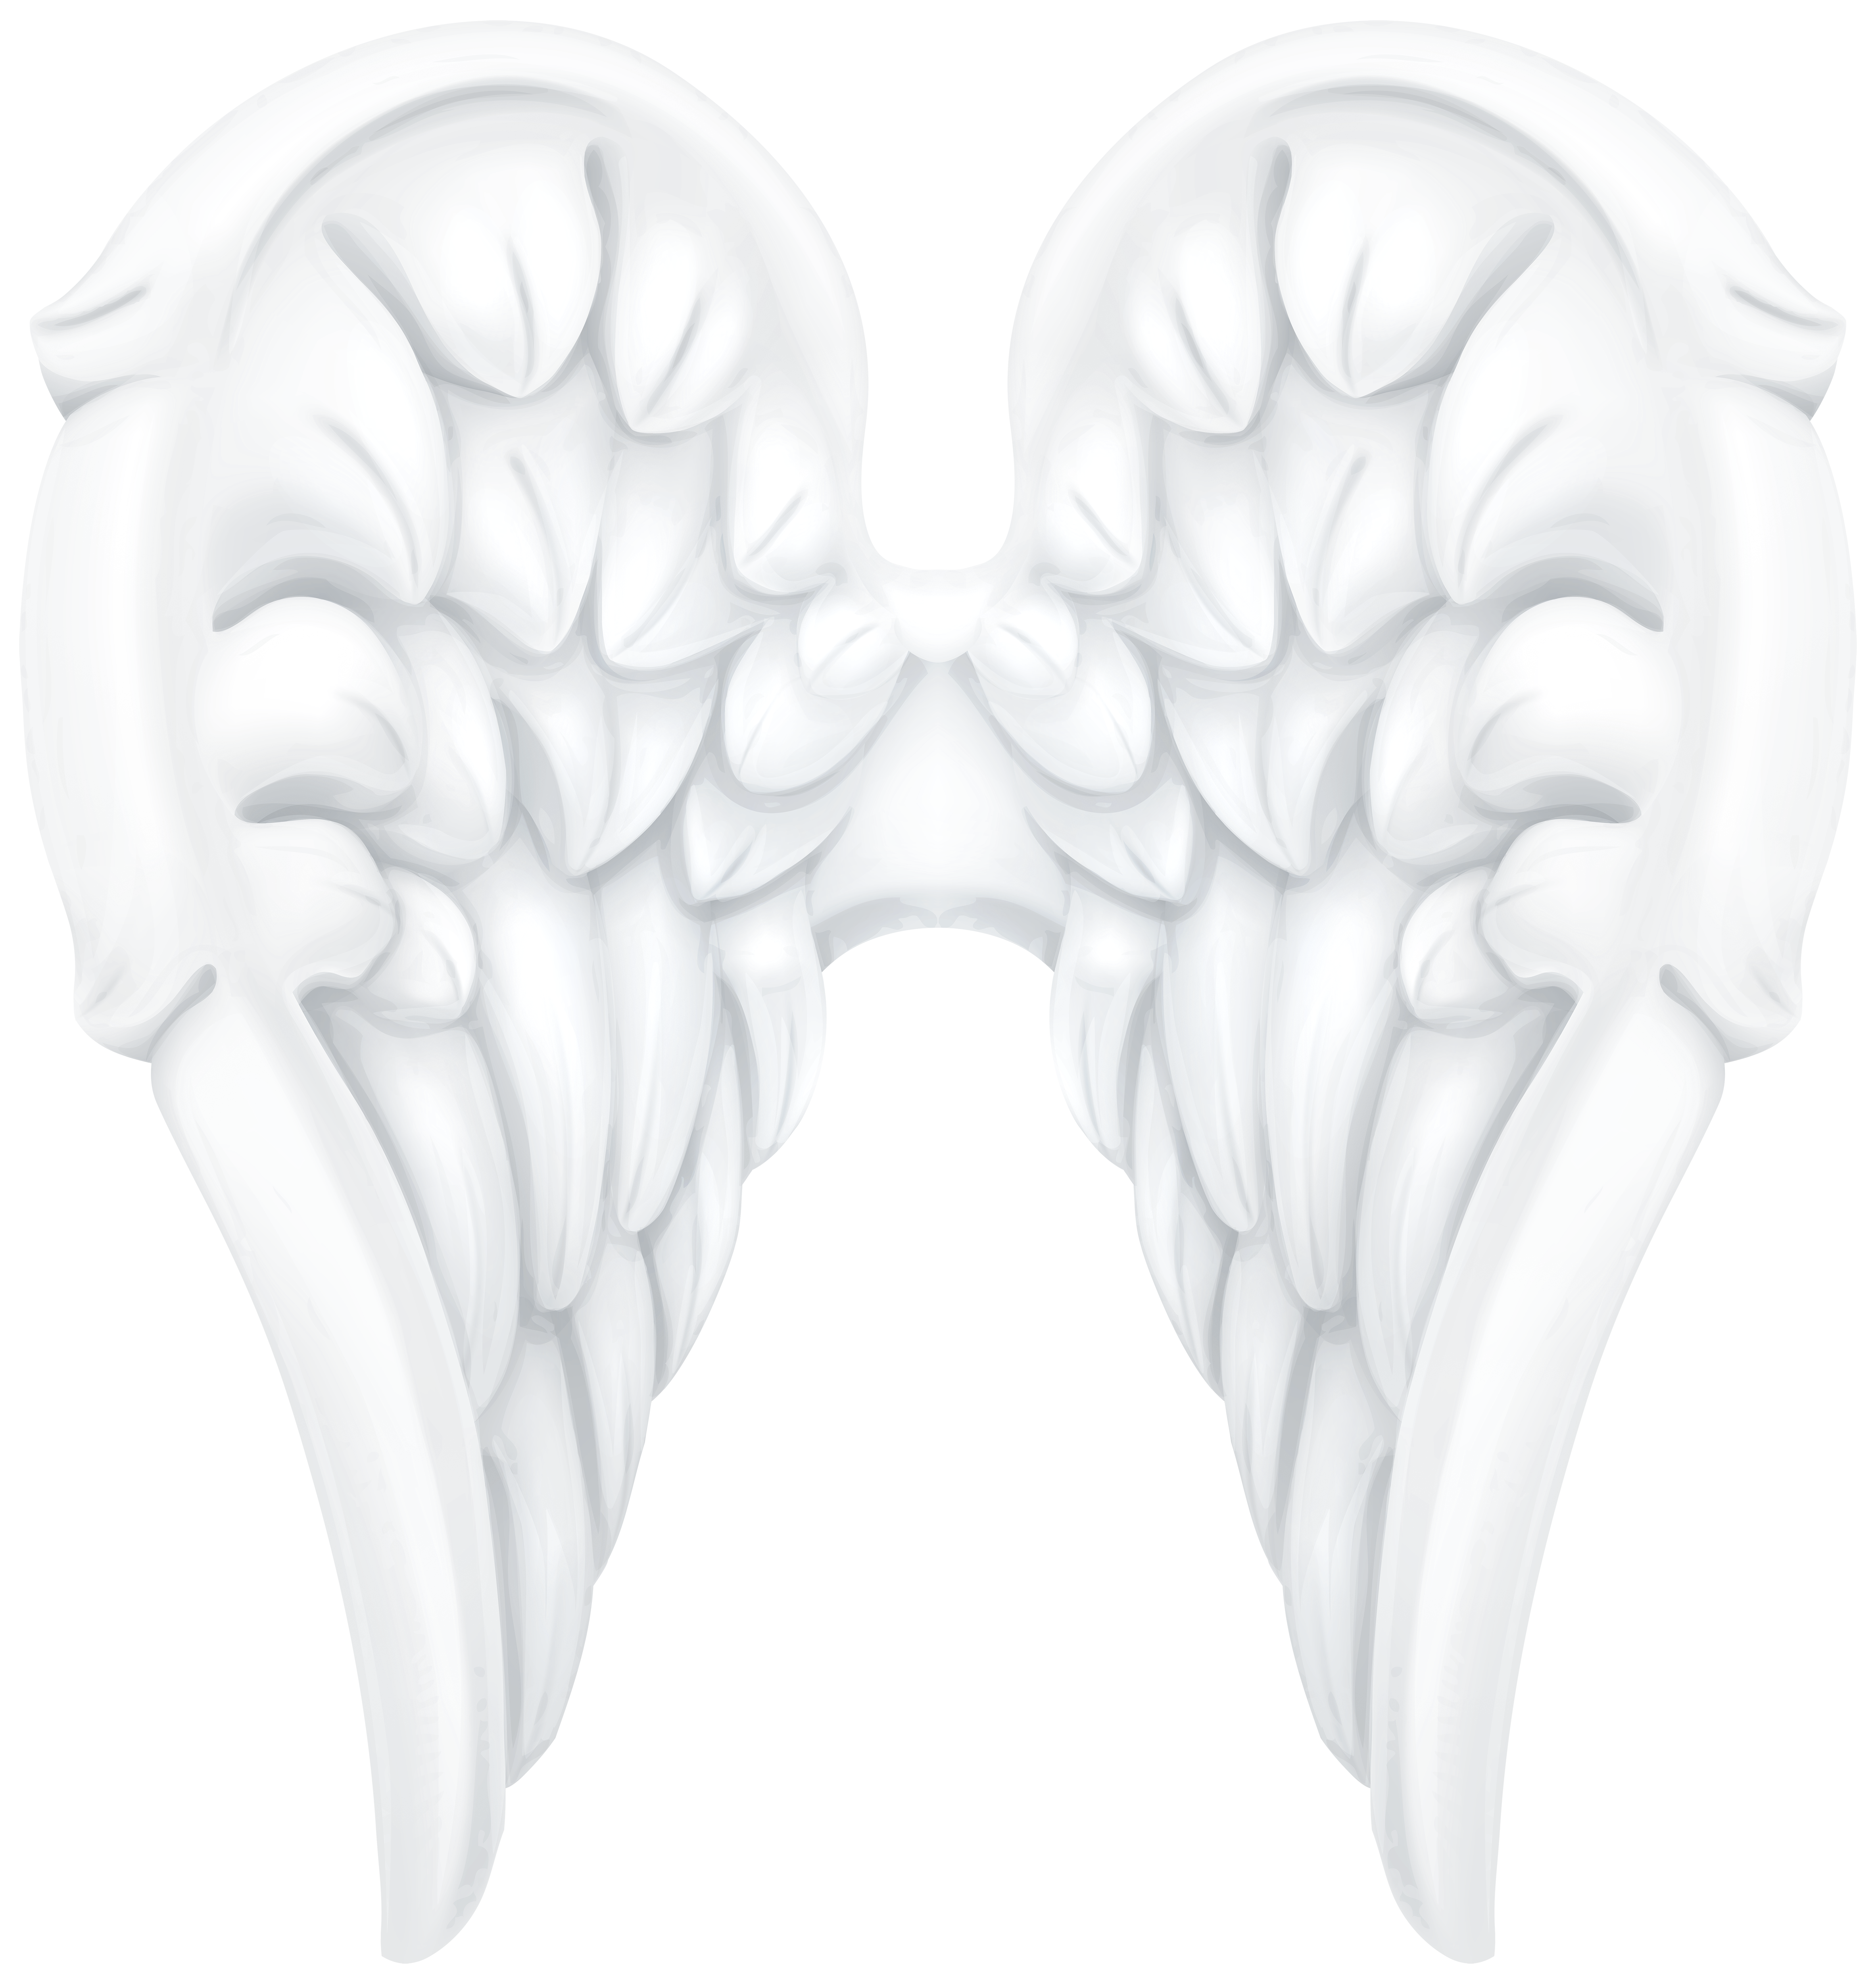 White angel wings.